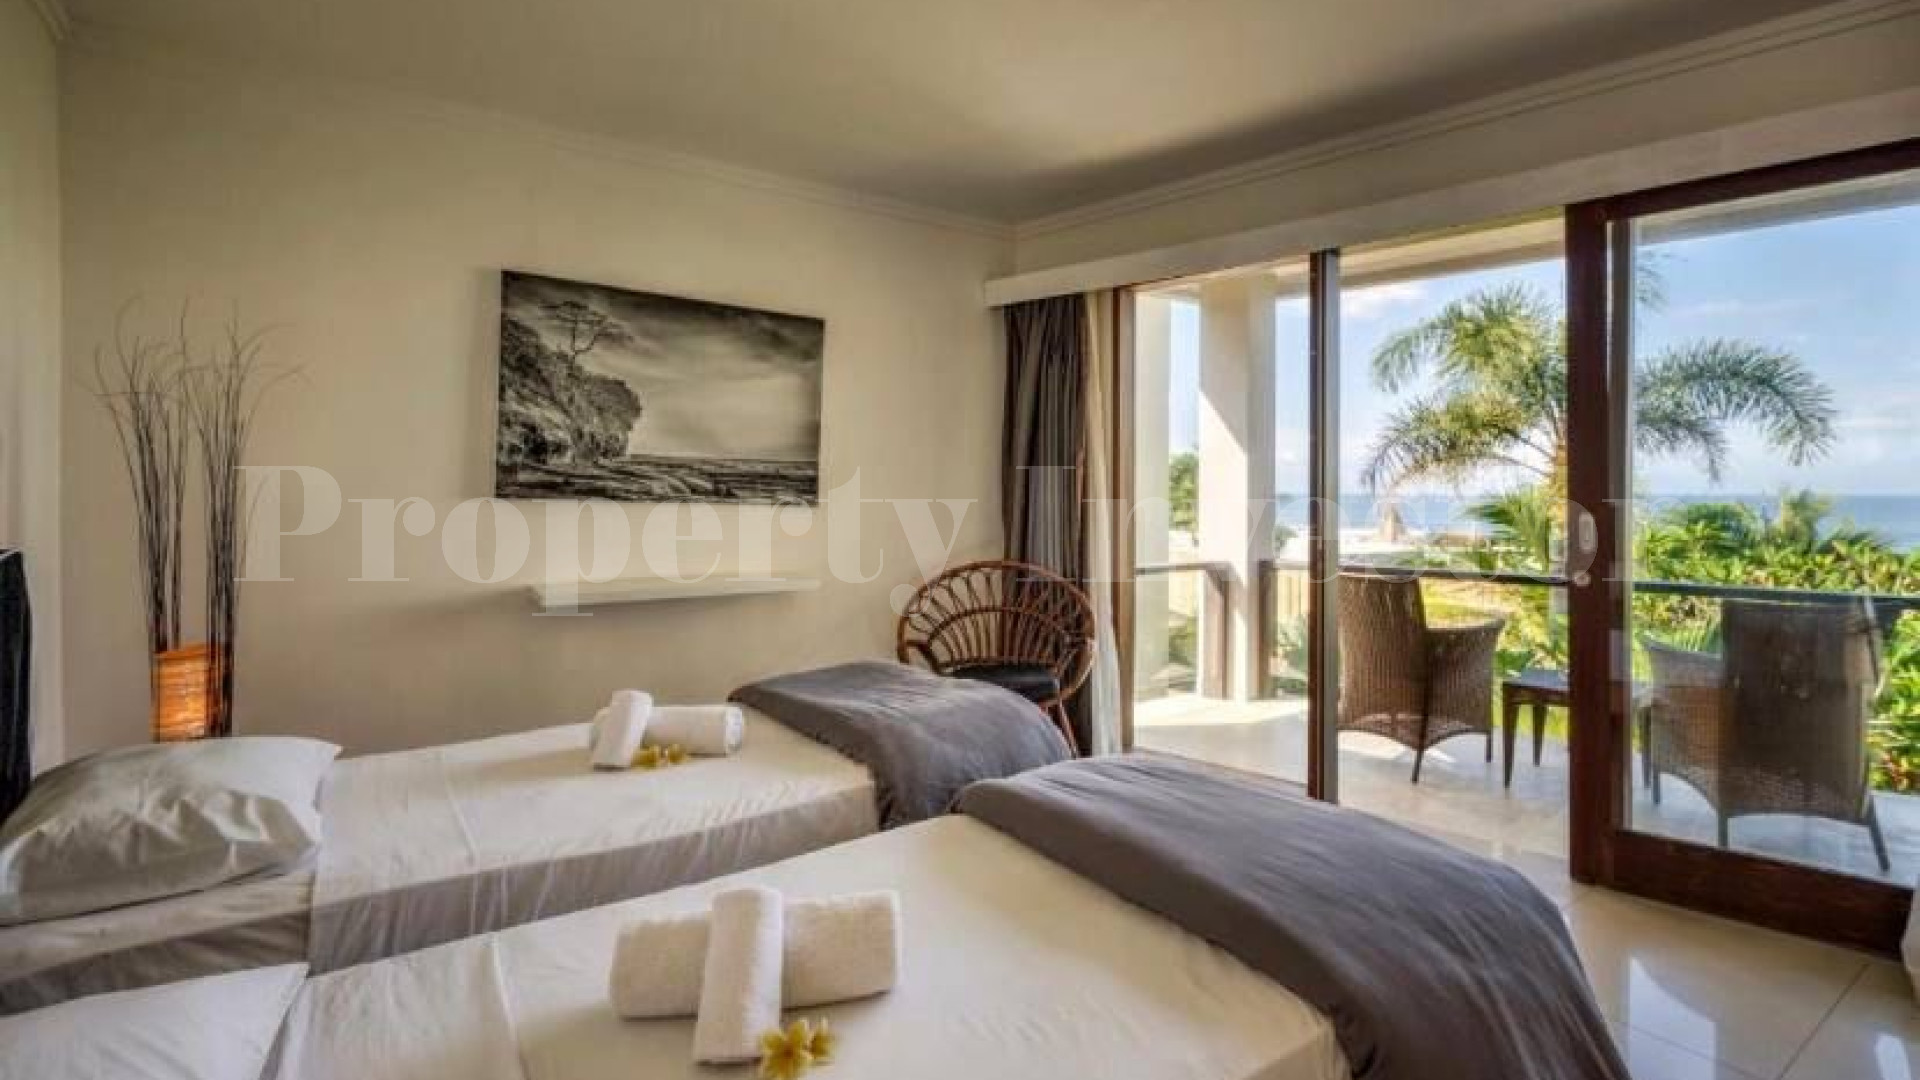 Modern 3 Bedroom Ocean View Surf Villa for Sale in Balian Beach, Bali